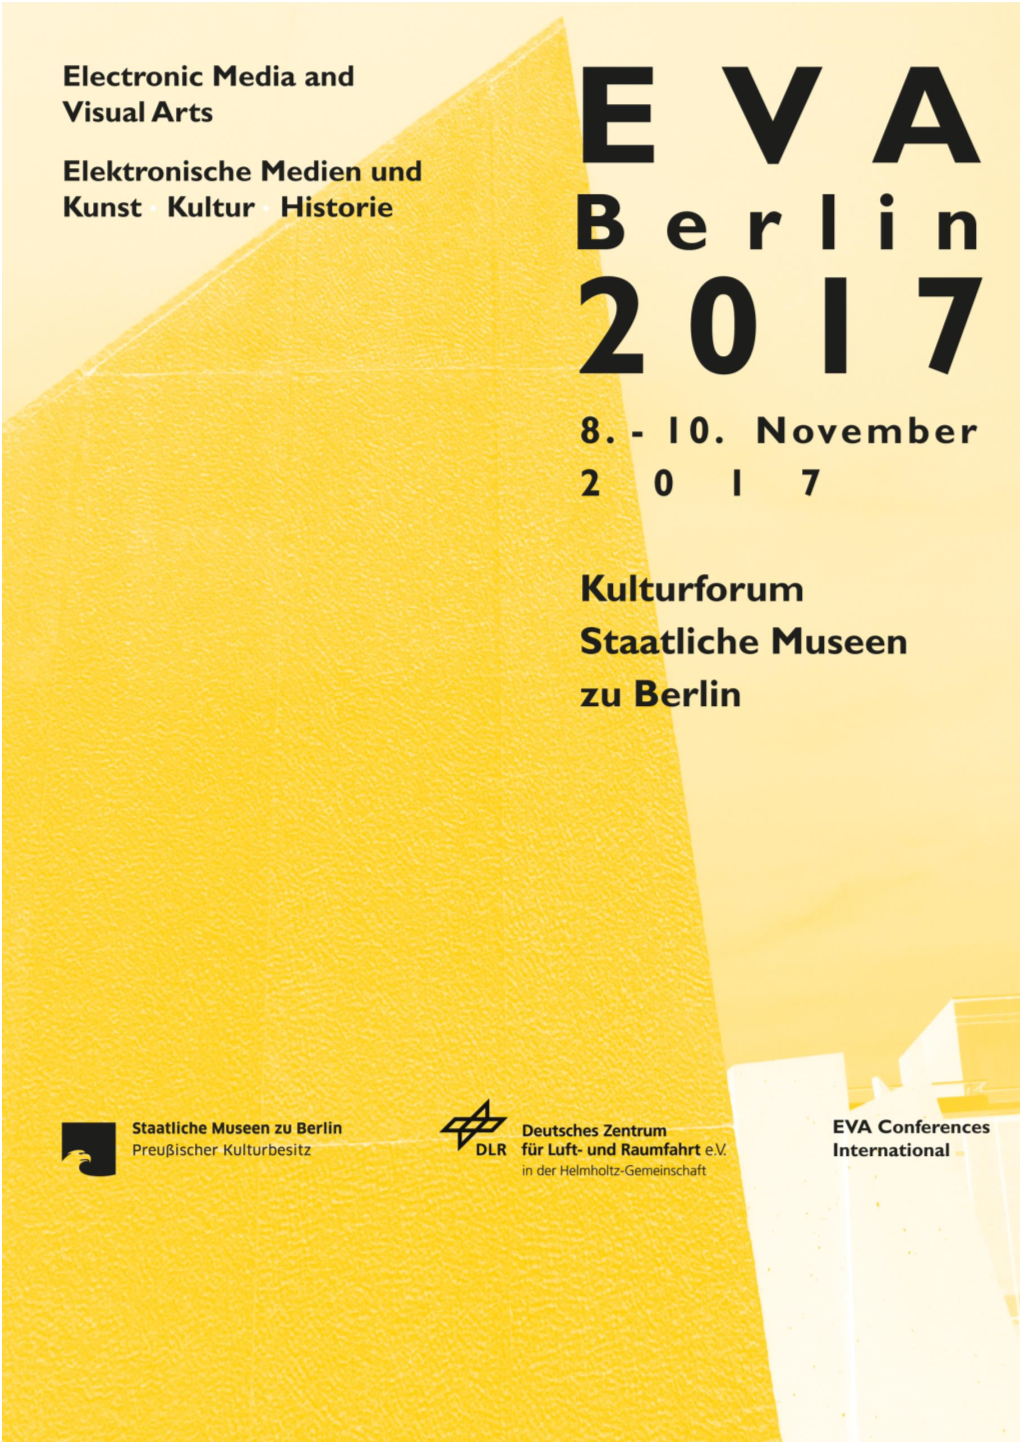 EVA BERLIN 2017 Elektronische Medien & Kunst, Kultur Und Historie